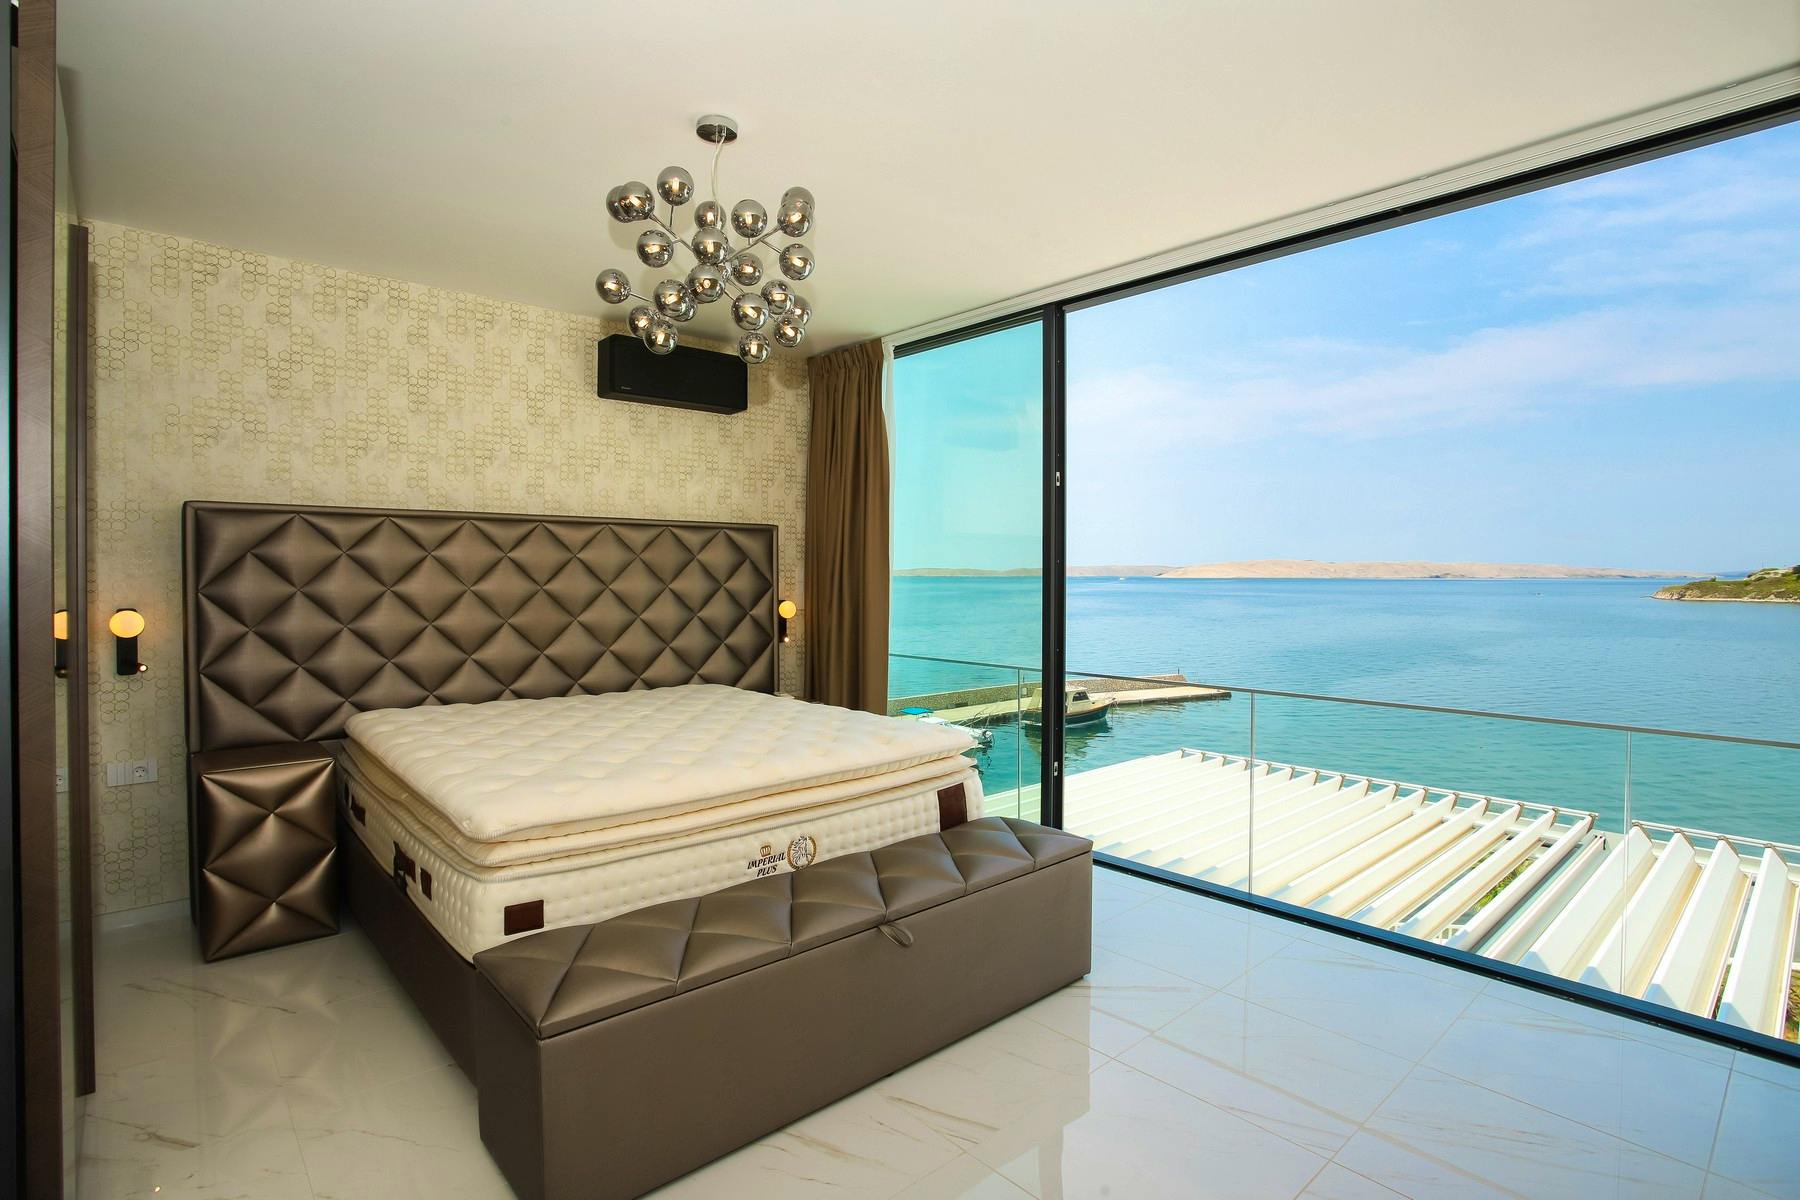 En-suite bedroom with sea view